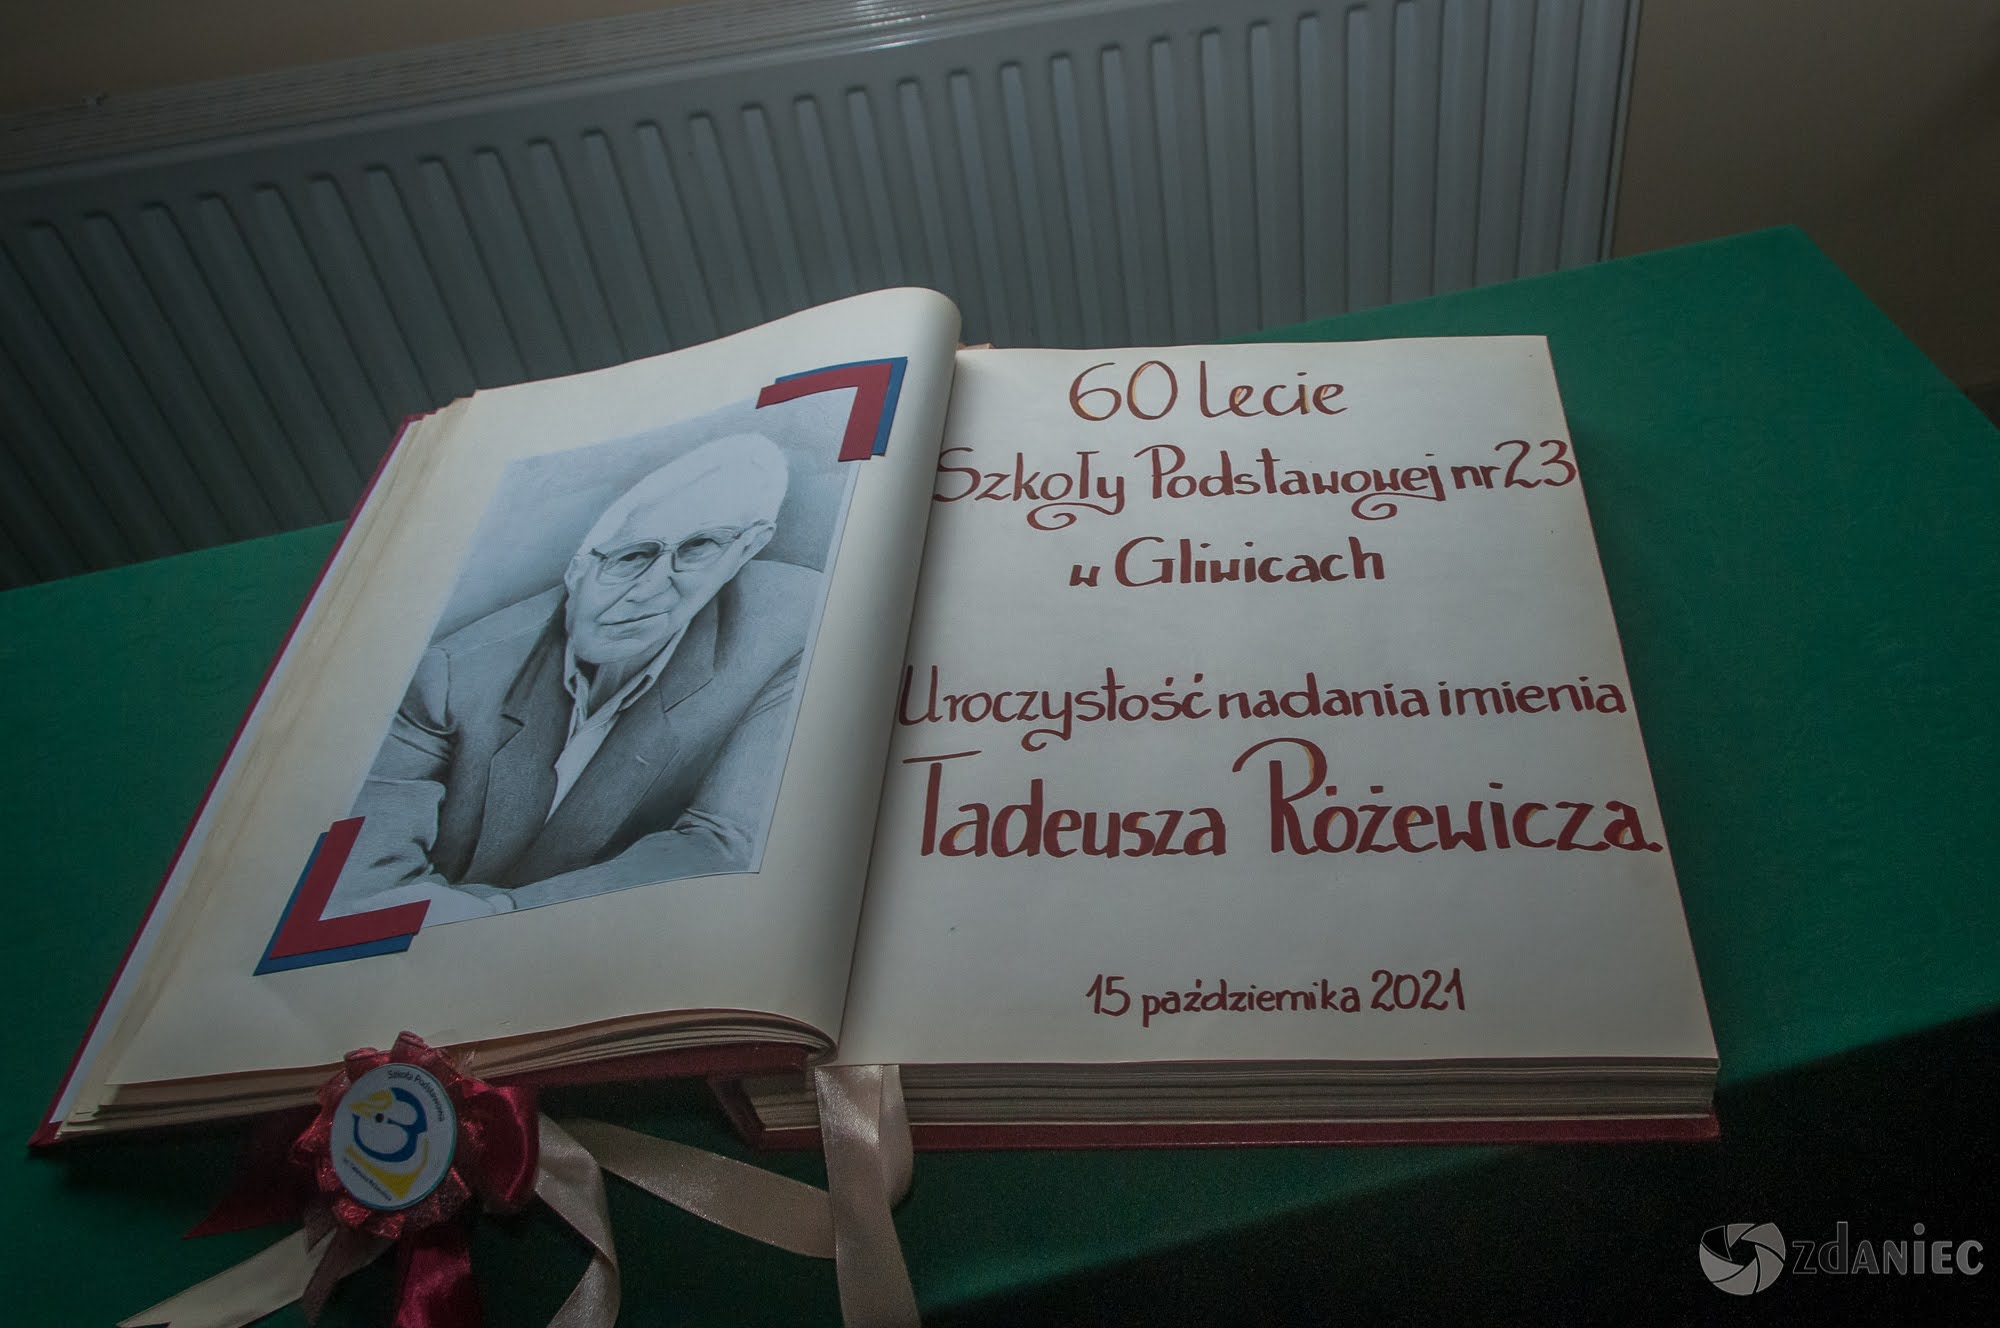 Uroczystość nadania imienia Tadeusza Różewicza Szkole Podstawowej nr 23 w Gliwicach